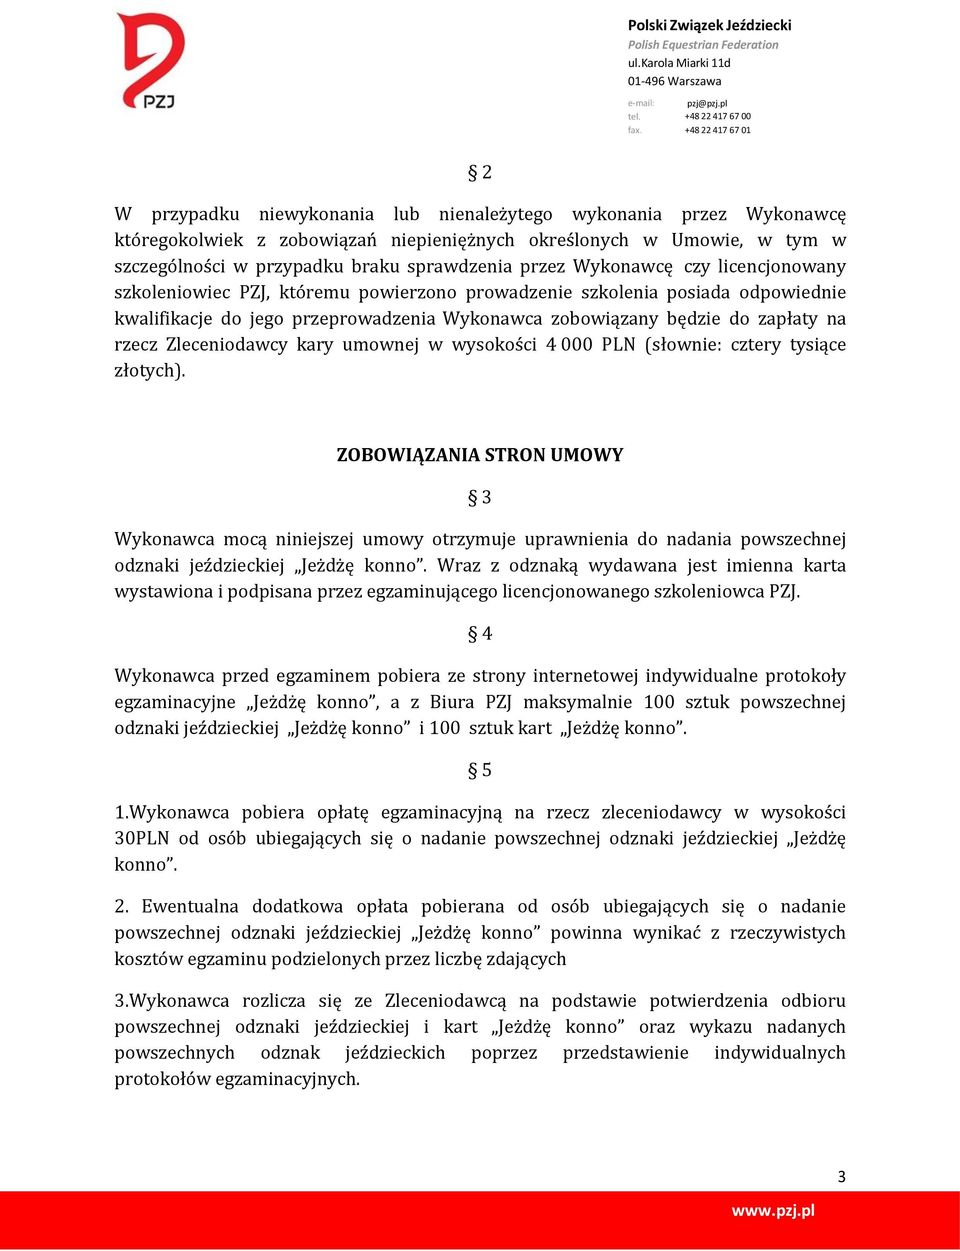 Zleceniodawcy kary umownej w wysokości 4 000 PLN (słownie: cztery tysiące złotych).